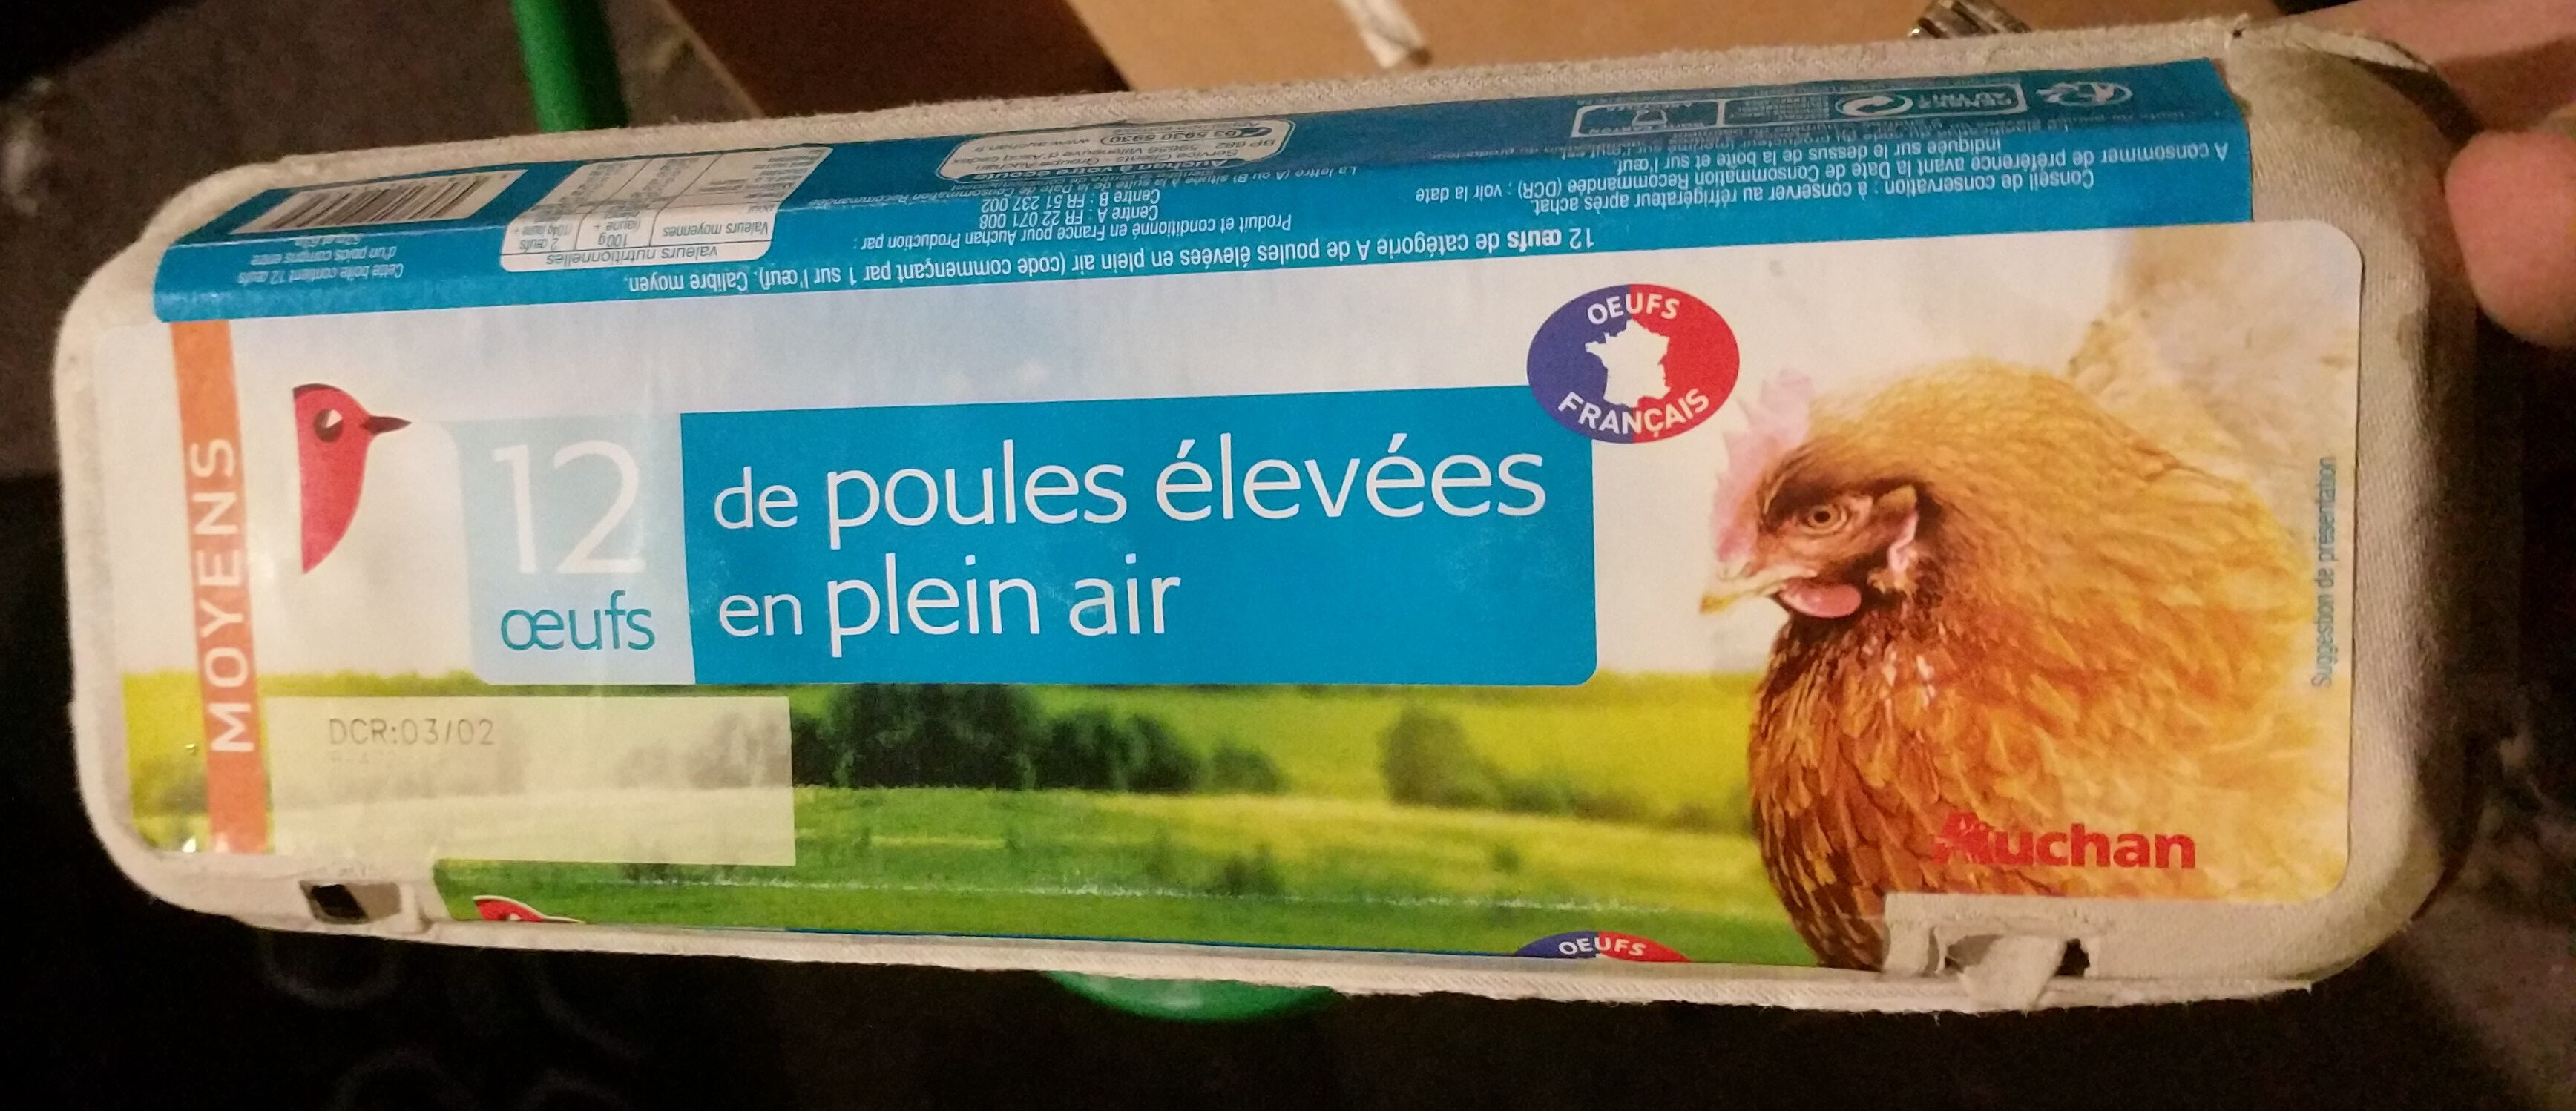 12 oeufs de poule elevees En Plein Air - Auchan - Product - fr